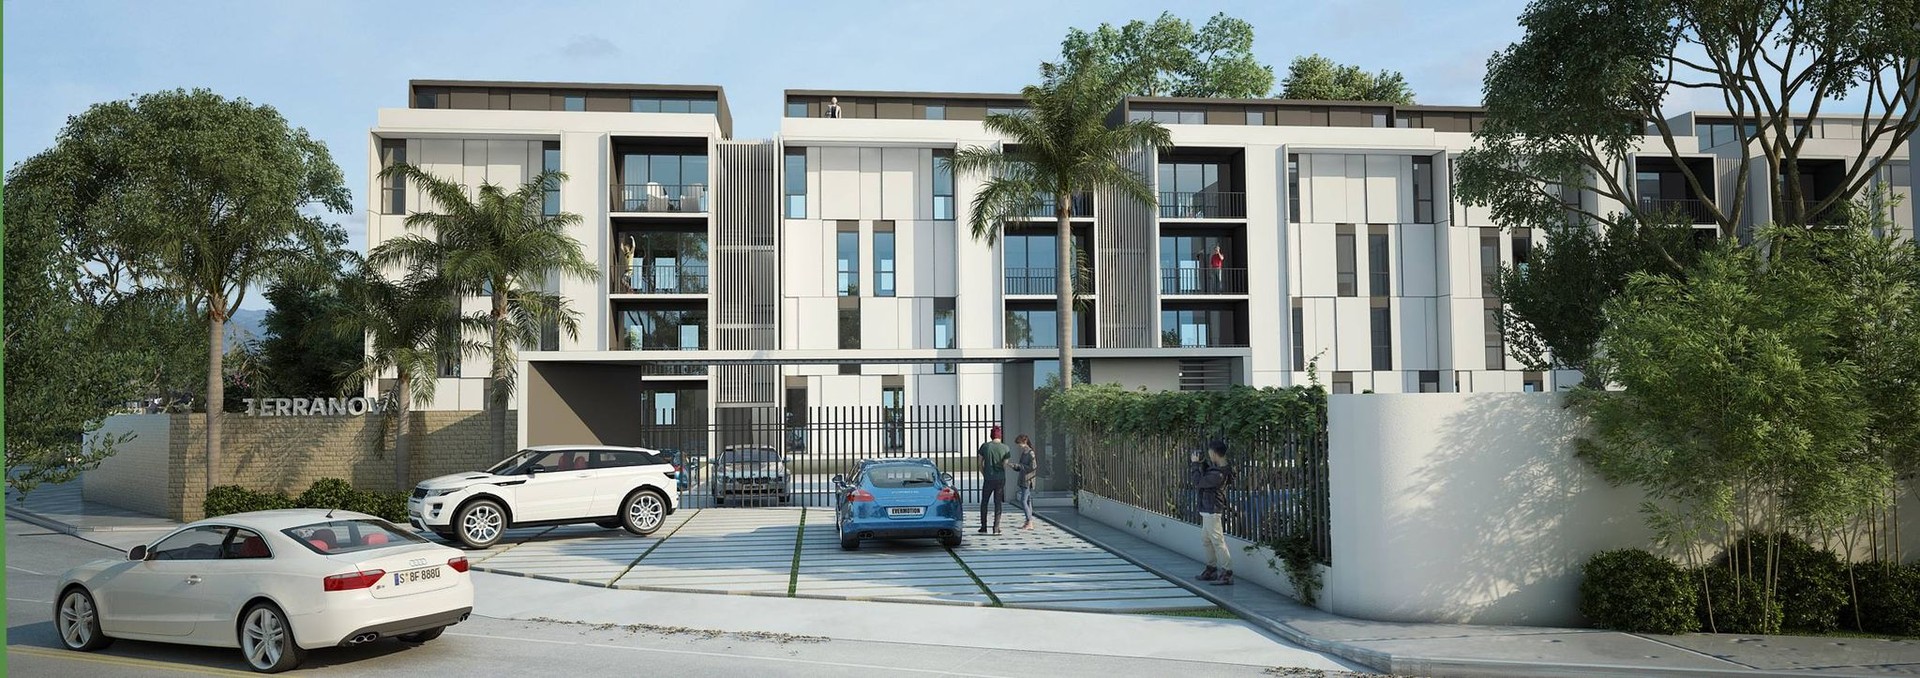 apartamentos - Apartamento En Planos,  En Primer Nivel Con Patio,  2 Parqueos, Proyecto Cerrado